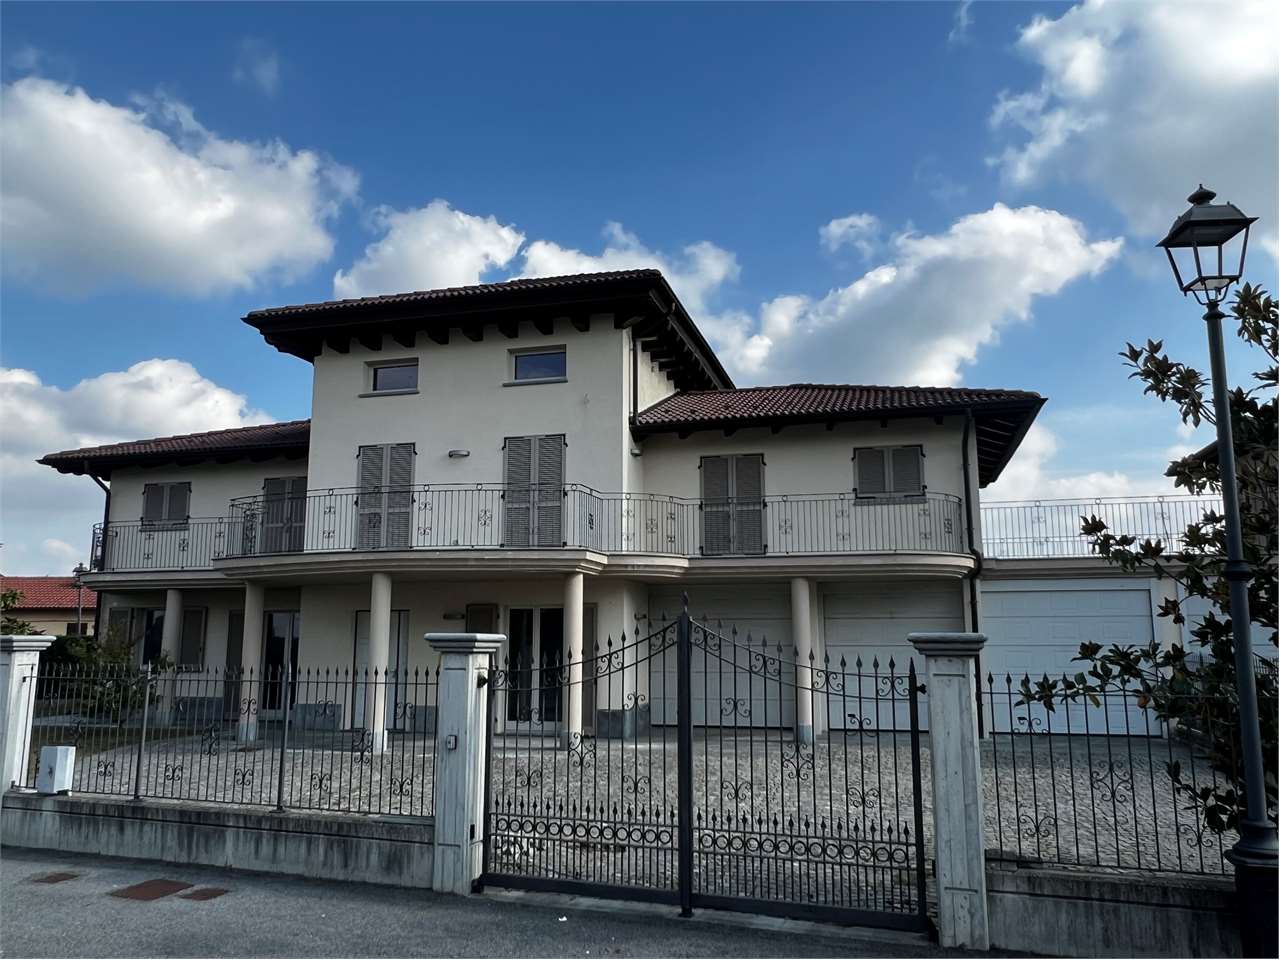 Villa in vendita a Camerano Casasco, 8 locali, prezzo € 360.000 | PortaleAgenzieImmobiliari.it